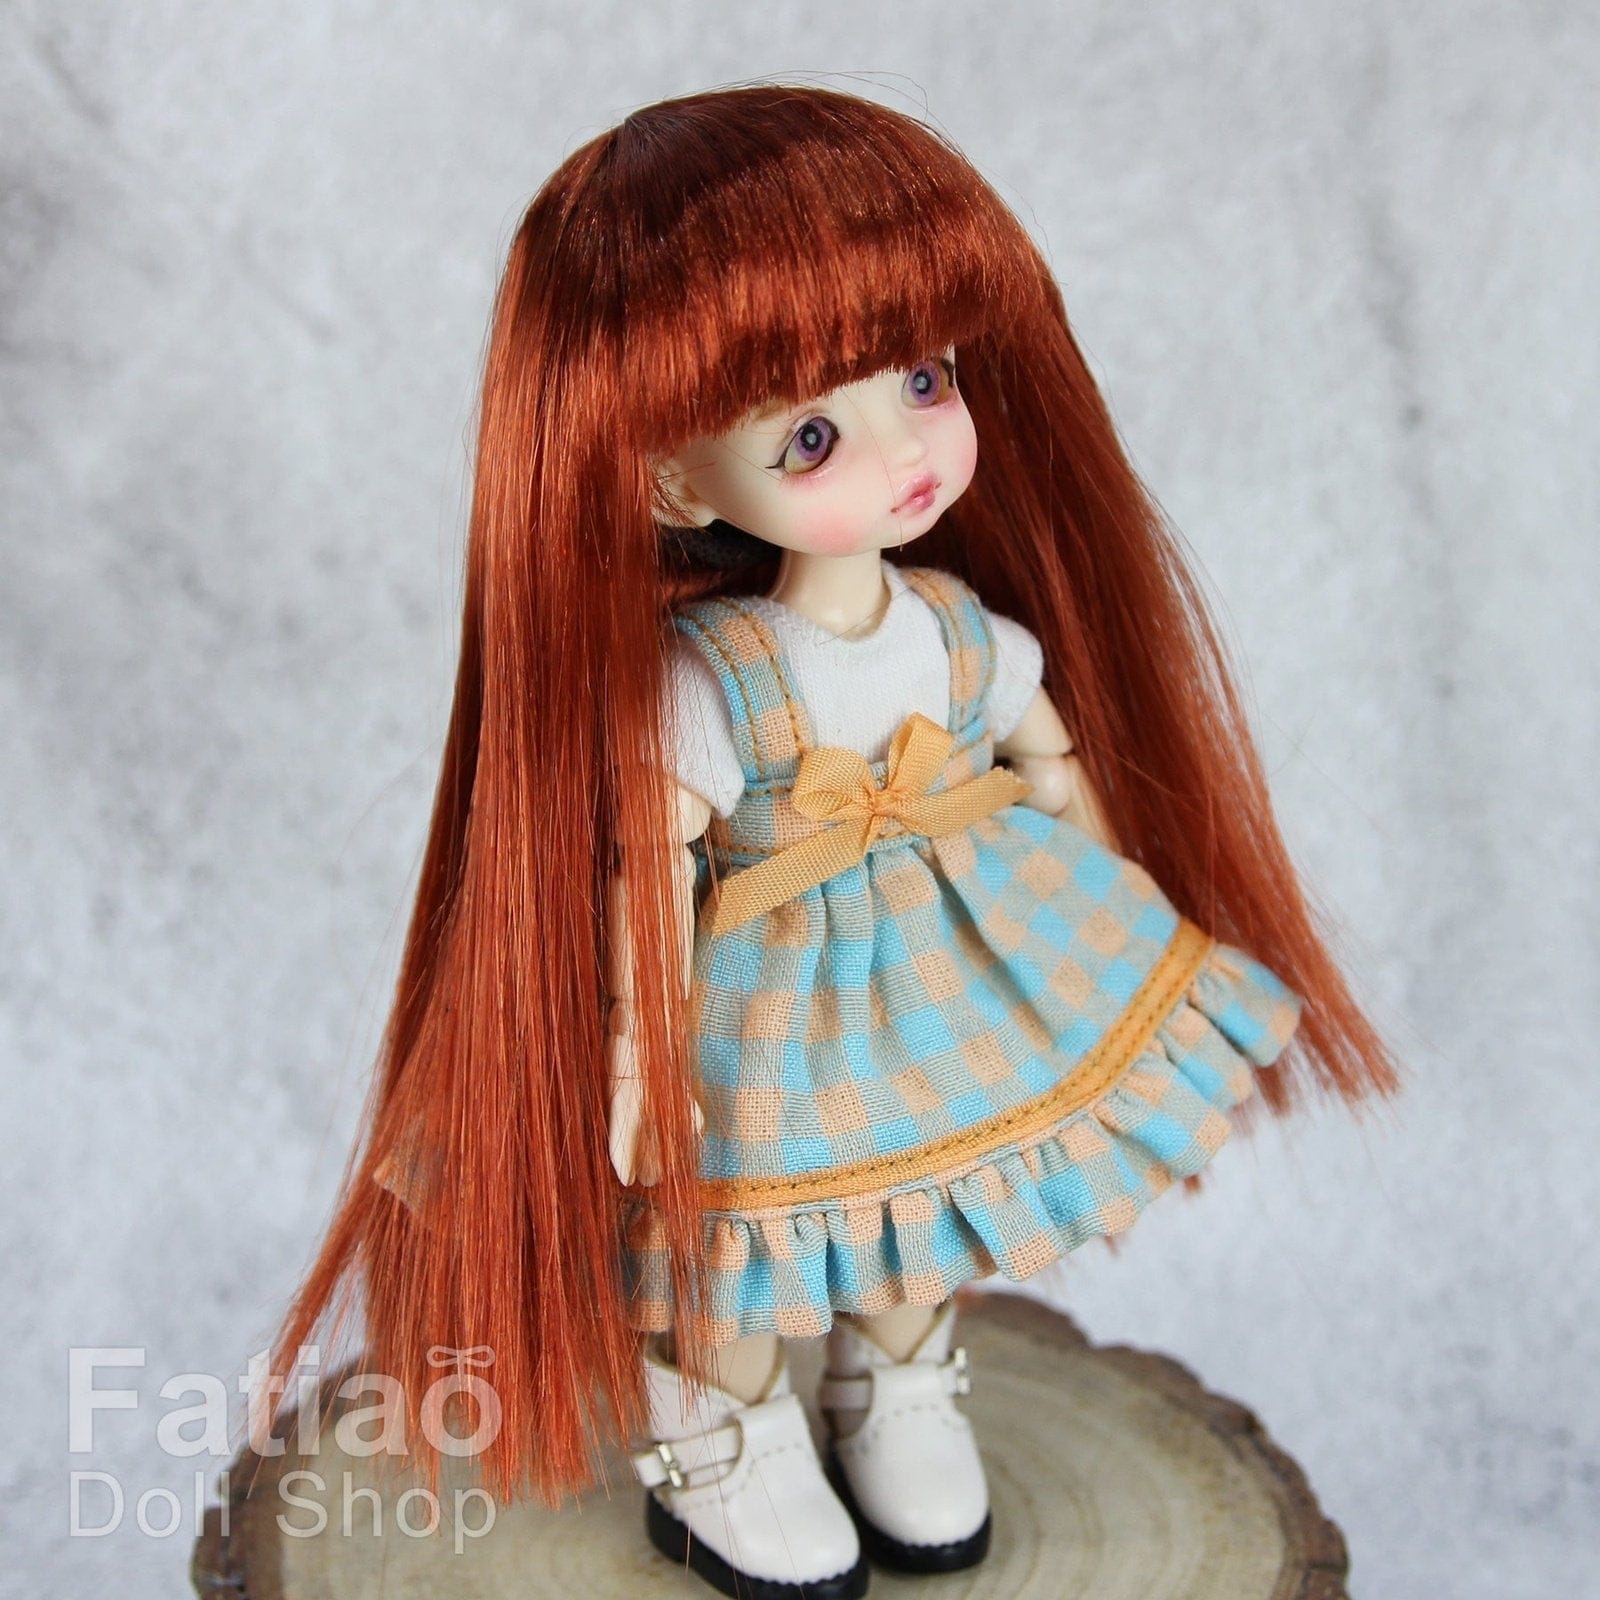 【Fatiao Doll Shop】FWF-056 娃用假髮 多色 / 3-4吋 BJD 12分 pukipuki